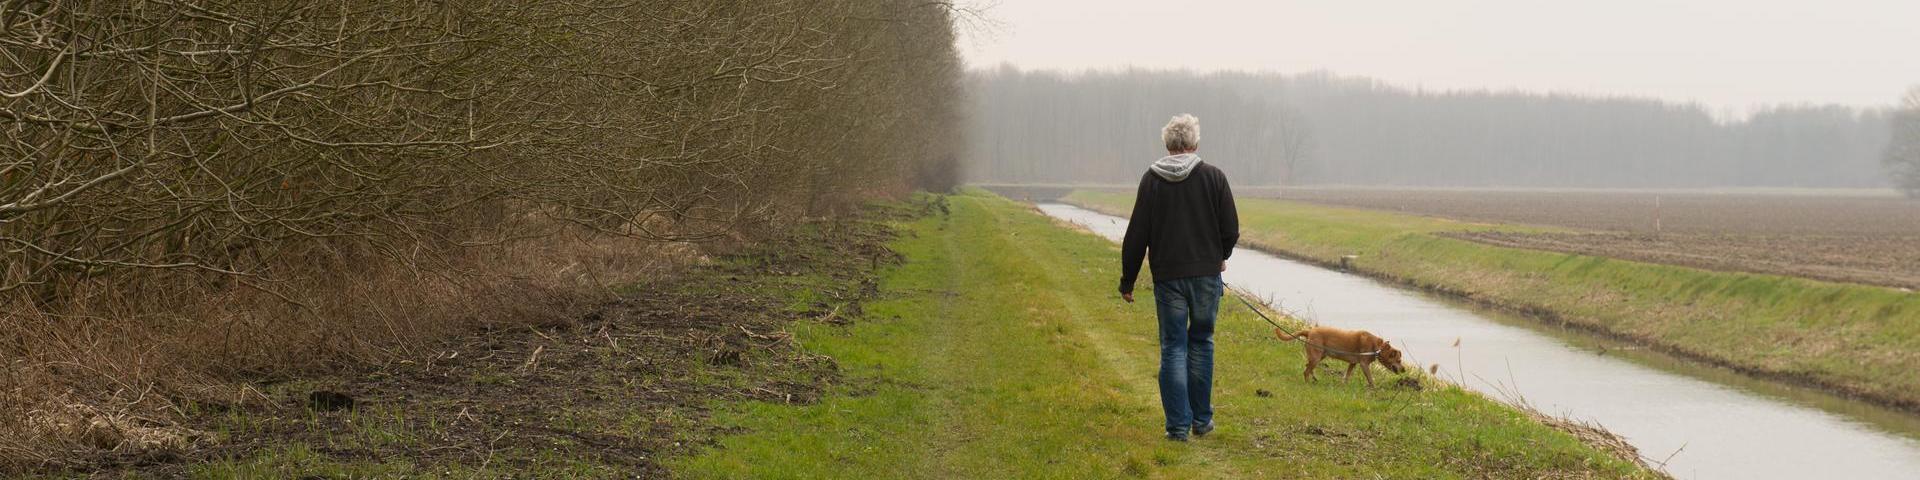 Een man en een hond lopen door een veld, langs een beek